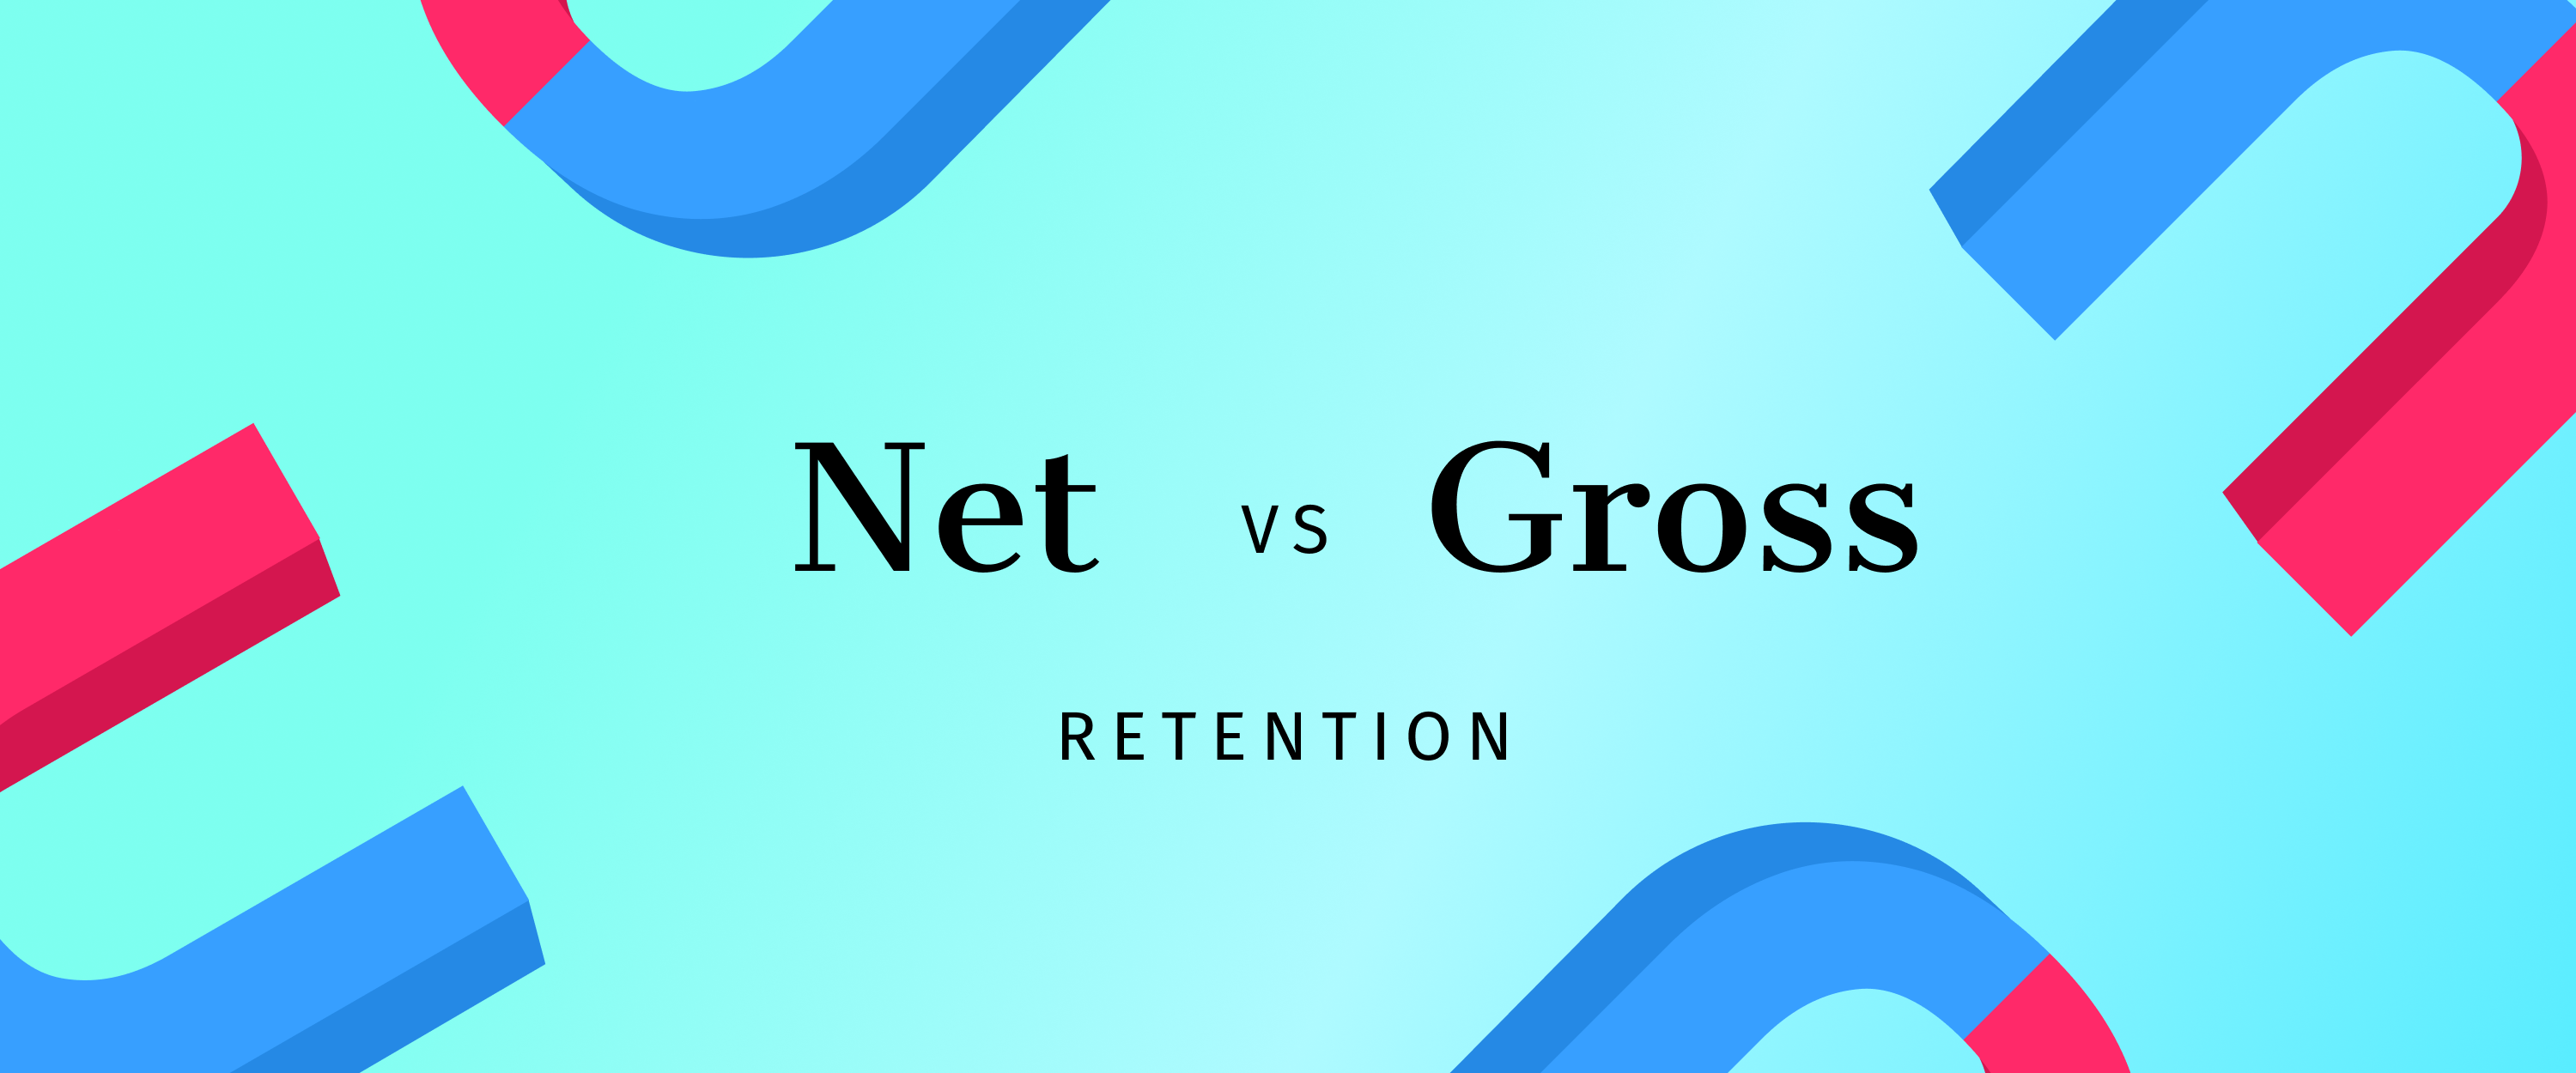 (blog)_NET_vs_Gross_Retention (1)